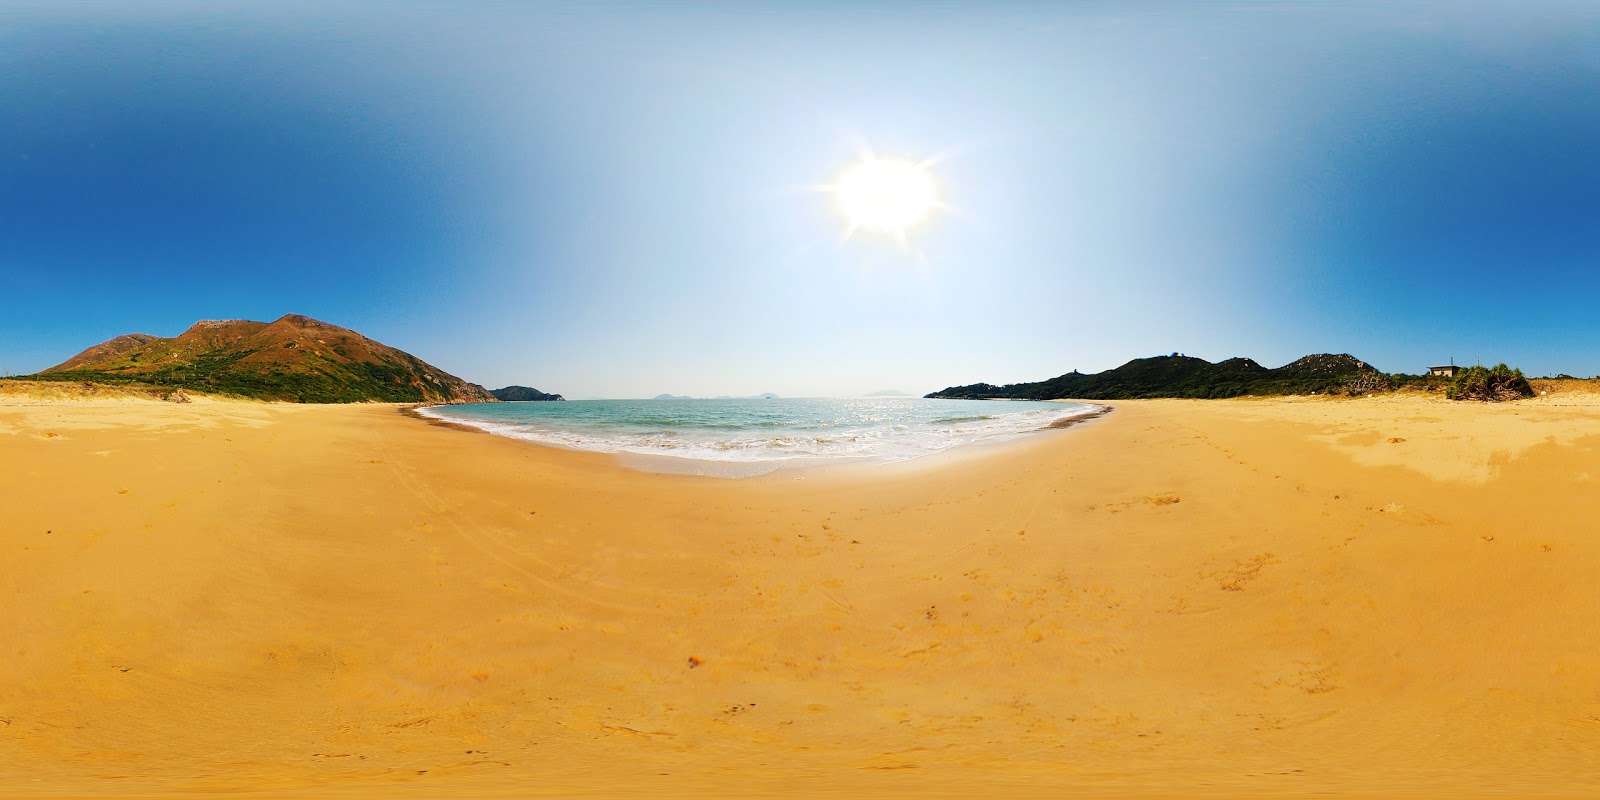 Zdjęcie Fan Lau Beach - popularne miejsce wśród znawców relaksu